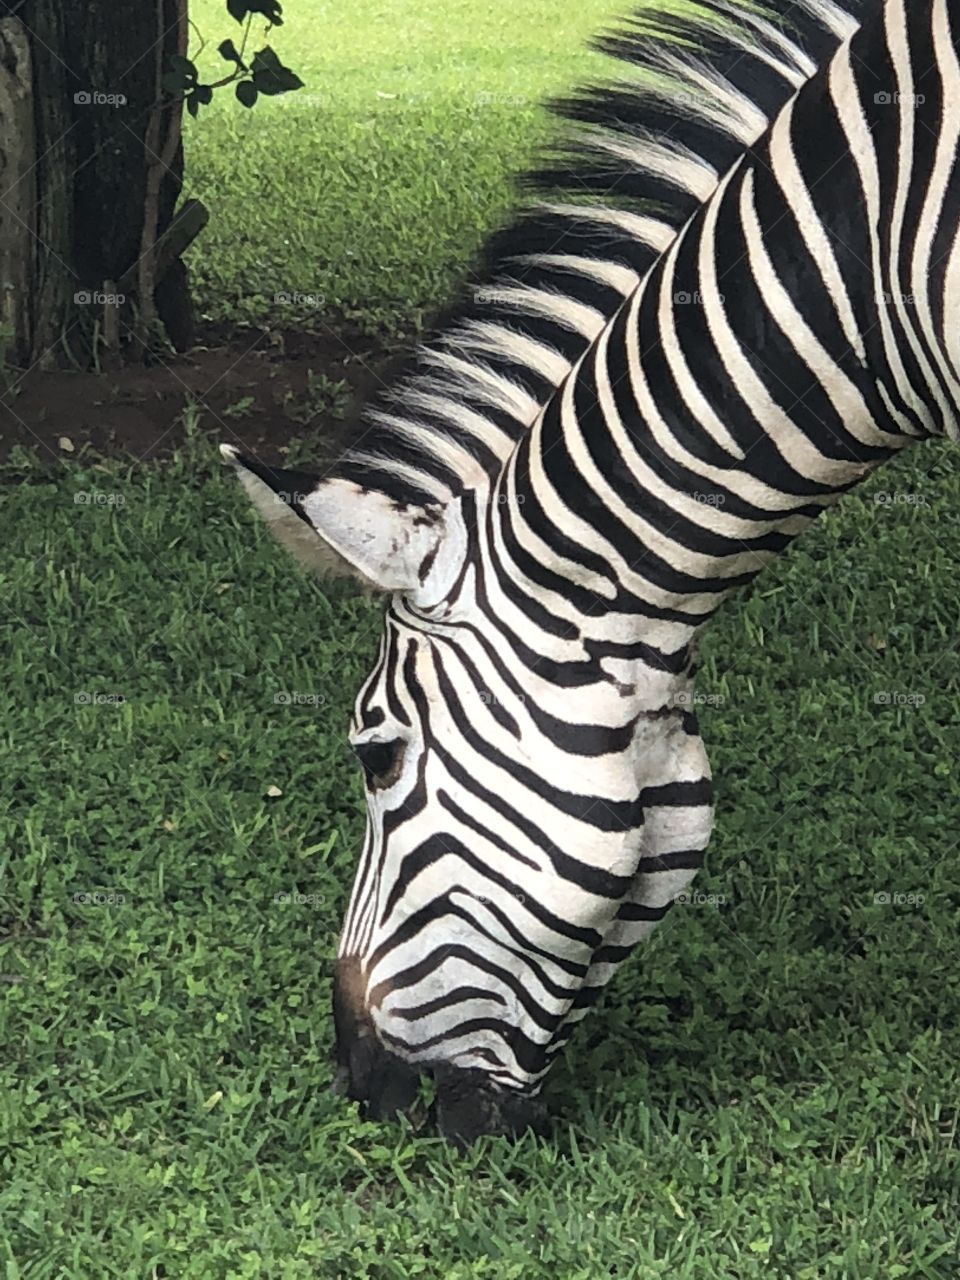 Zebra closeups 